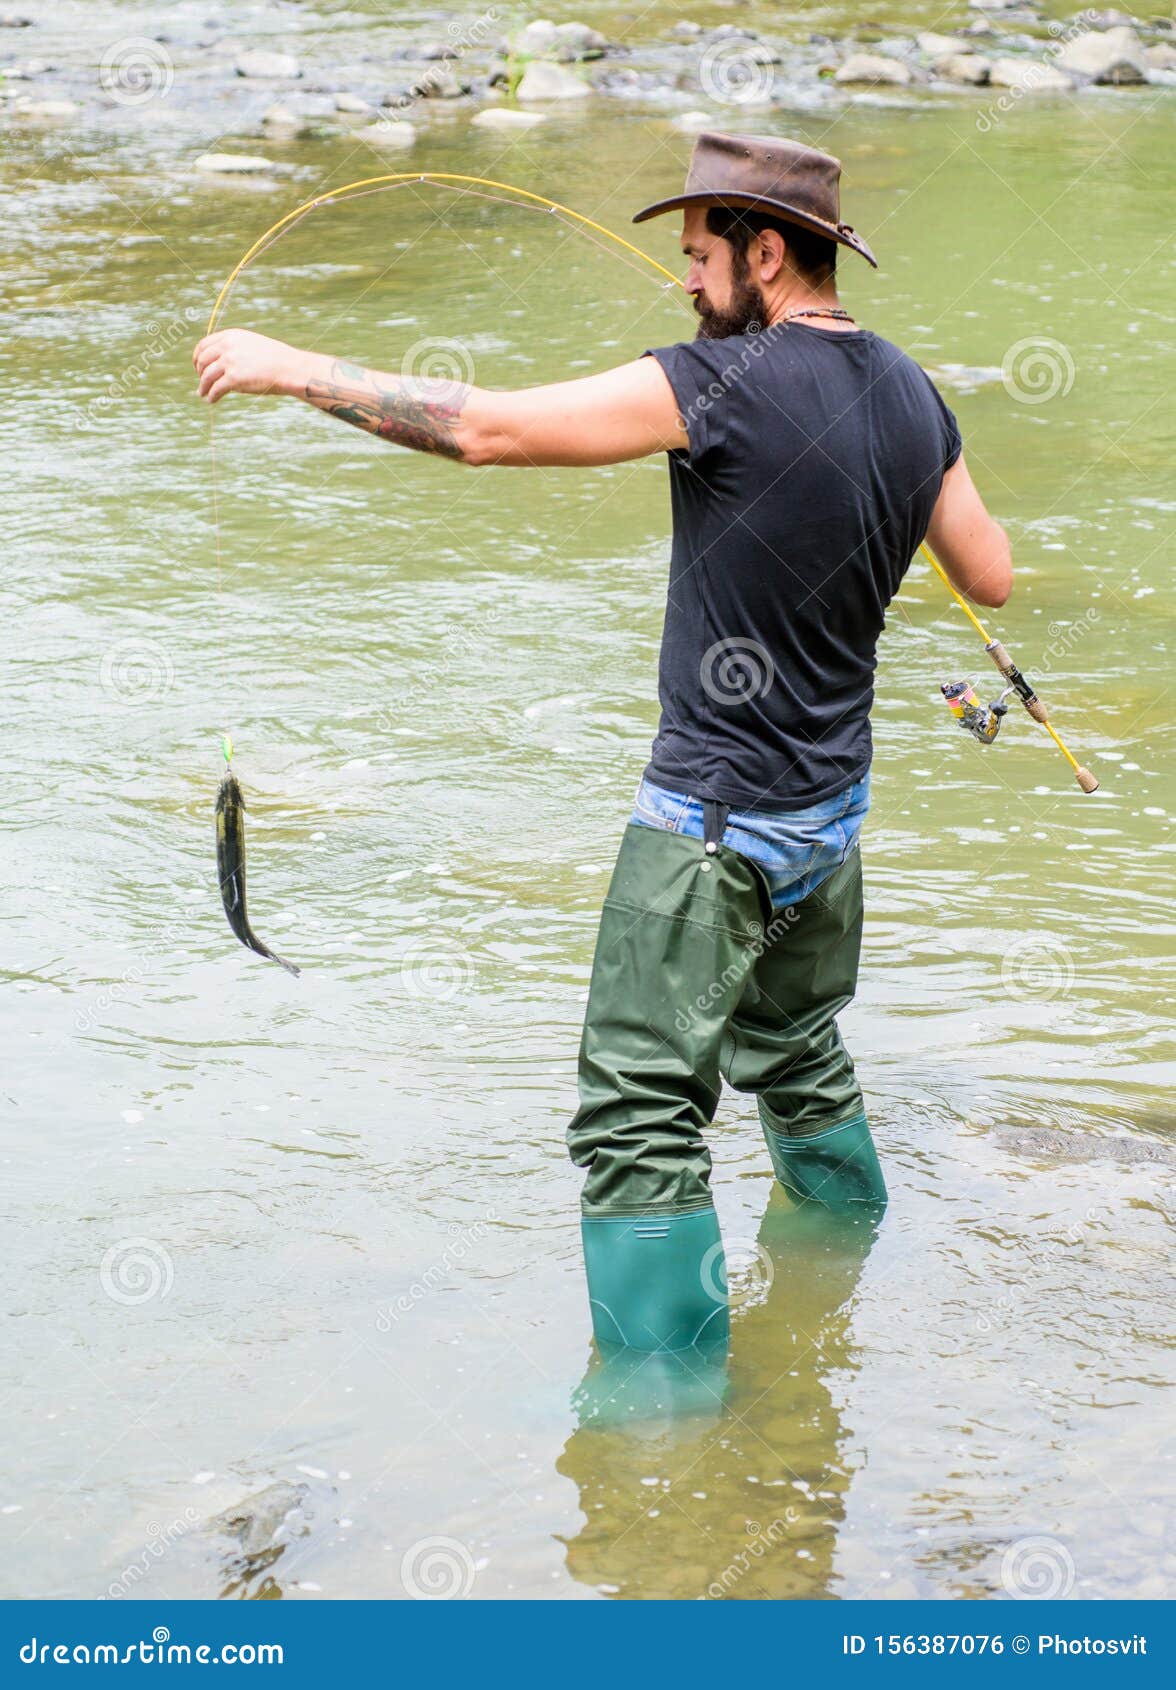 Hobby Masculino De Hombre Brutal Usa Botas De Goma En El Agua RÃo. Actividad Del Fin De Semana De Pesca. Pescador Con Foto de archivo - de barbudo, hombre: